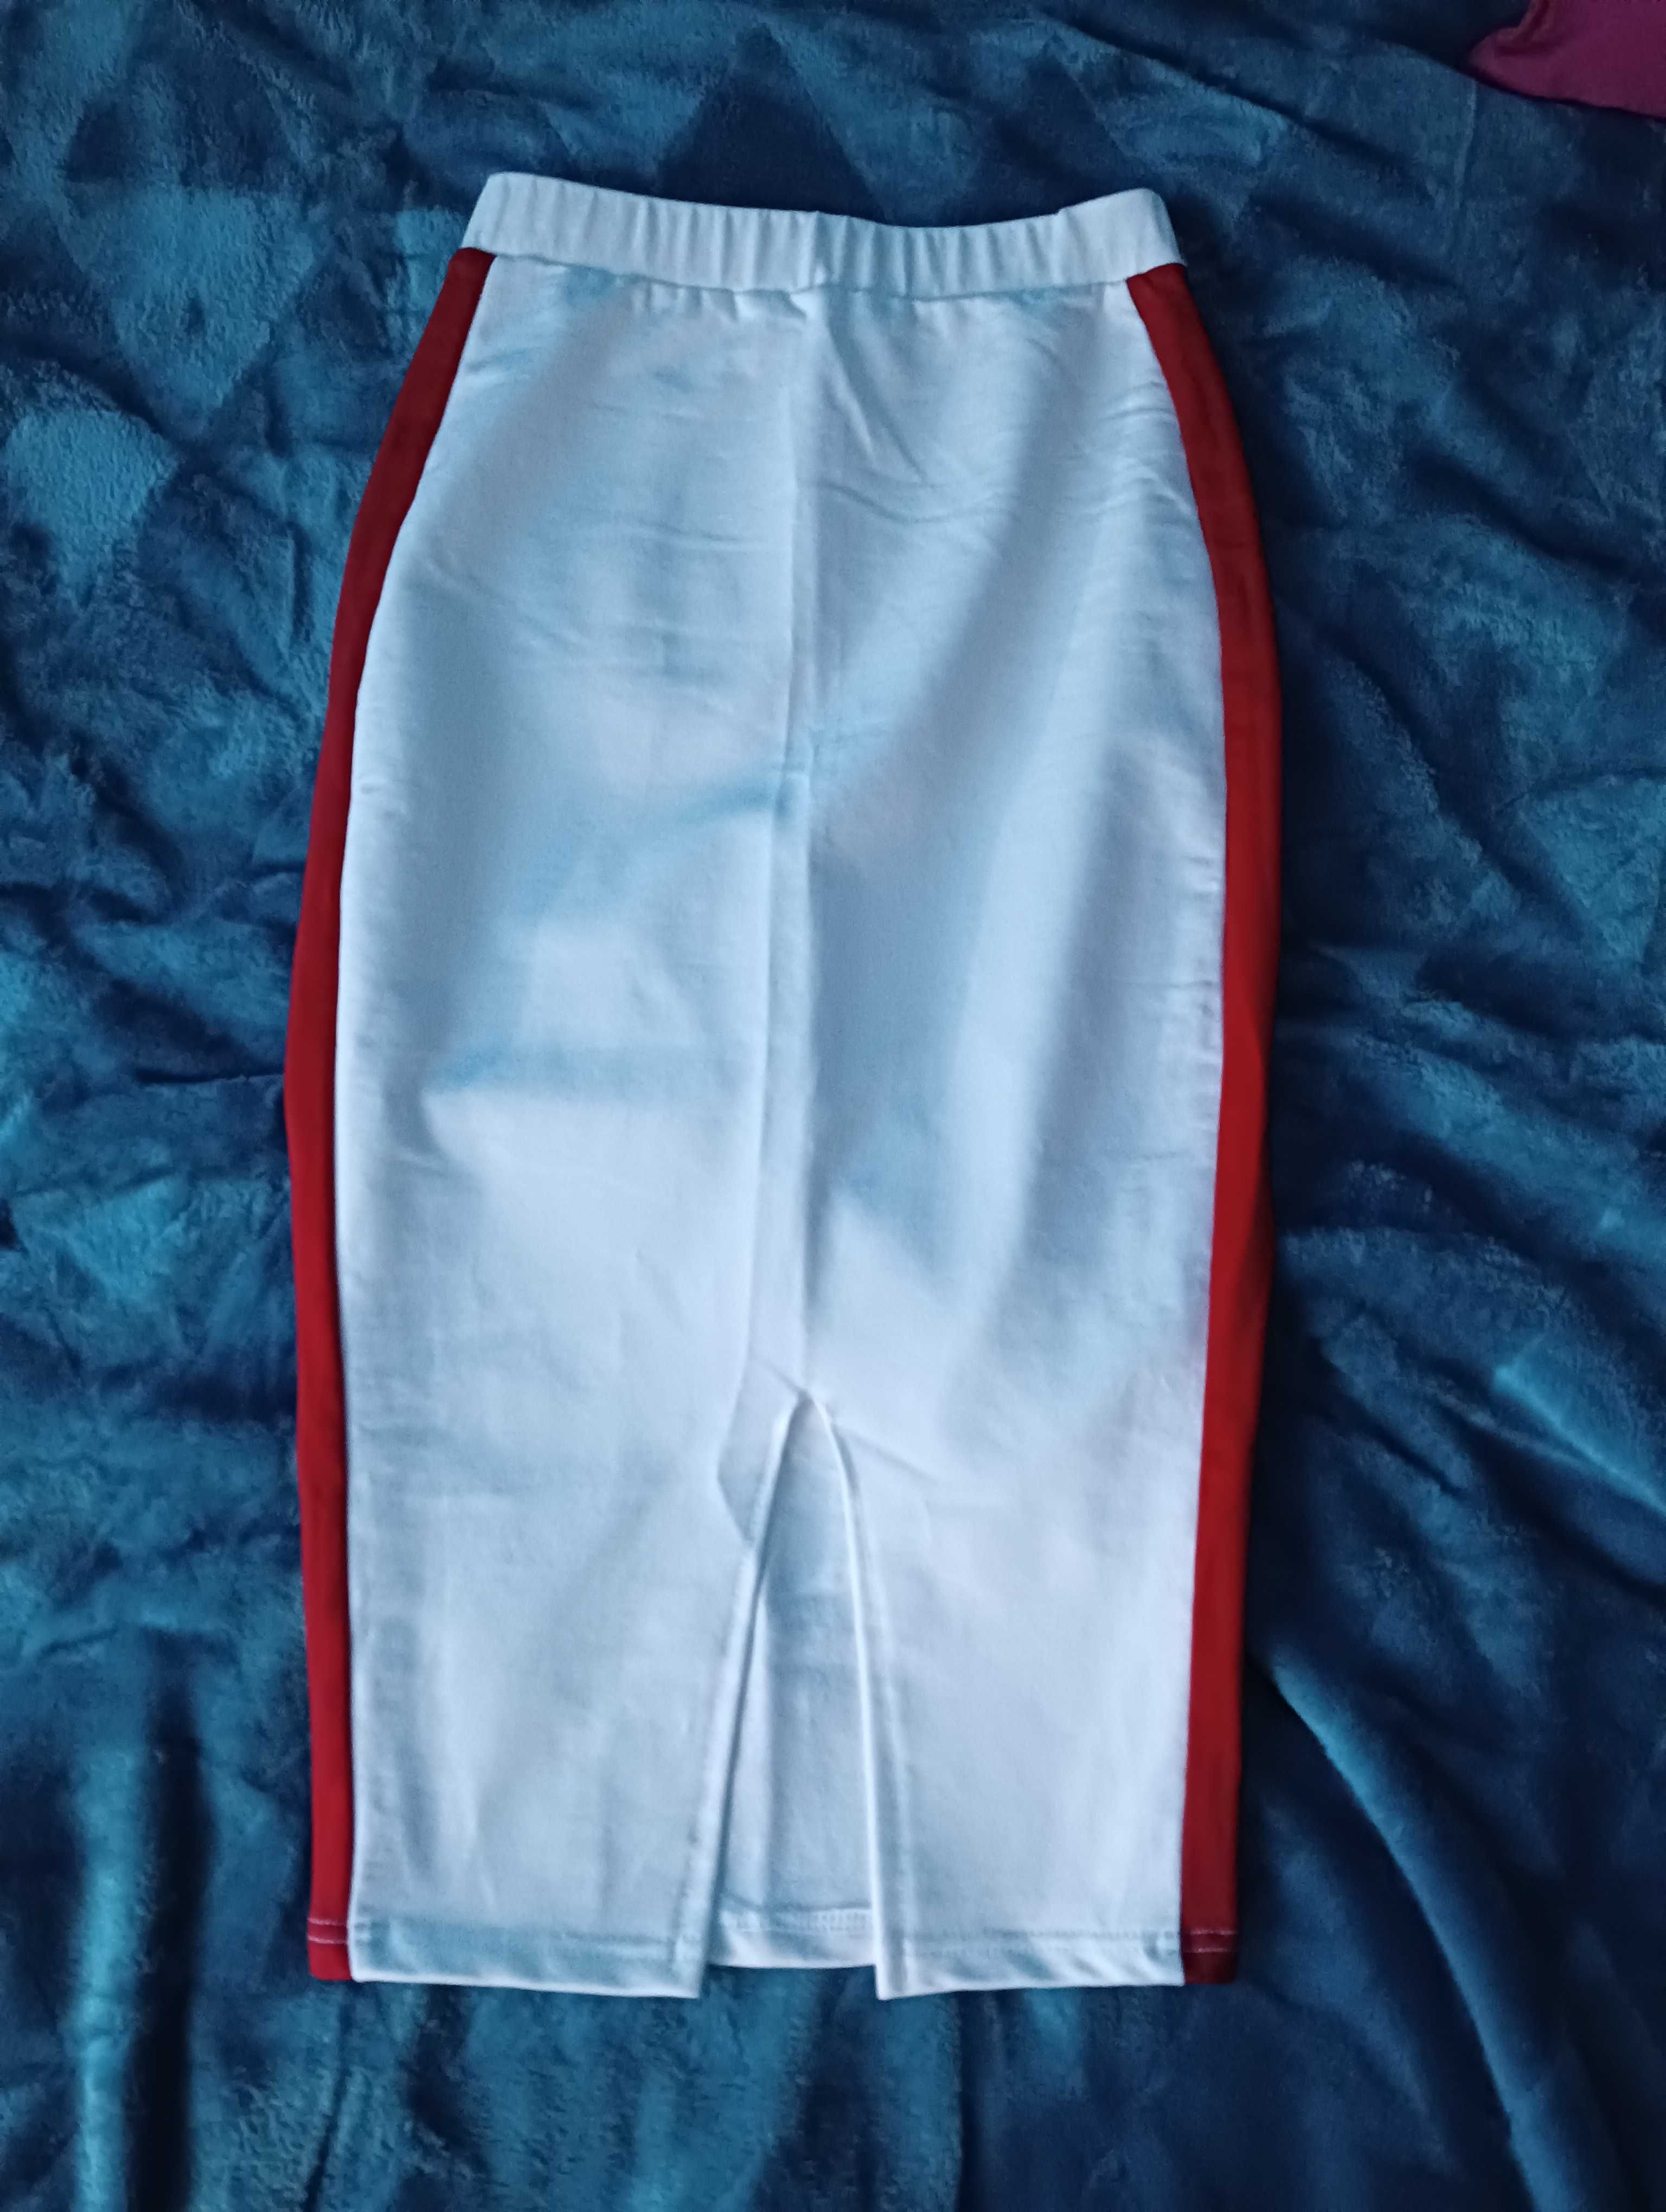 Spódnica biała ołówkowa rozporek z tyłu czerwony pasek po boku xs